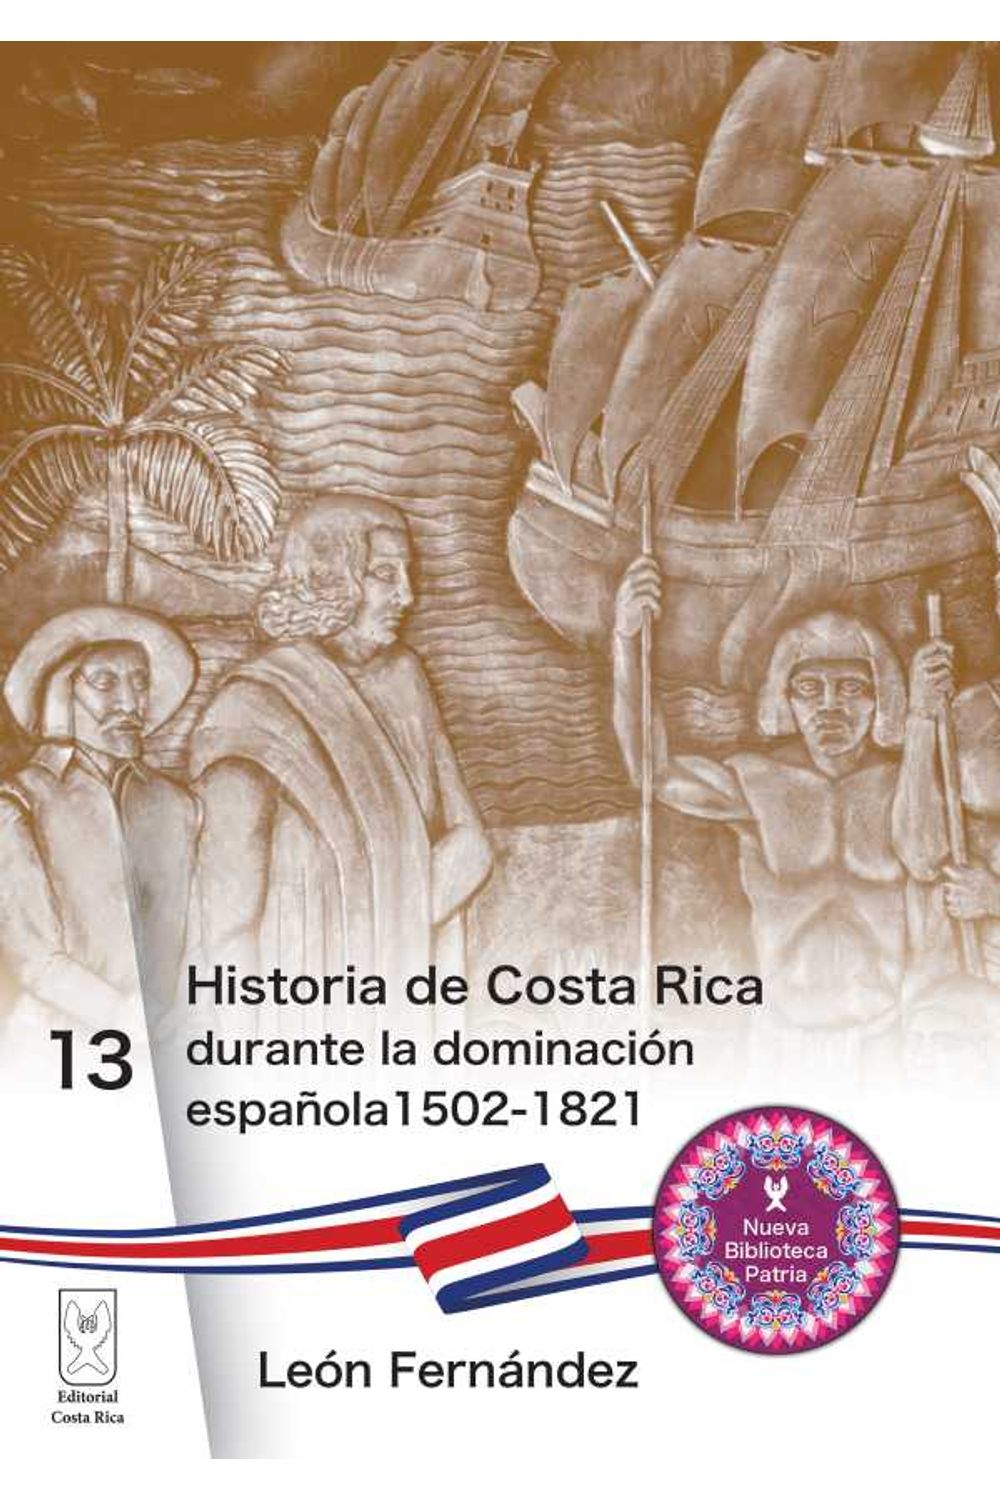 bw-historia-de-costa-rica-durante-la-dominacioacuten-espantildeola-15021821-editorial-costa-rica-9789930580493